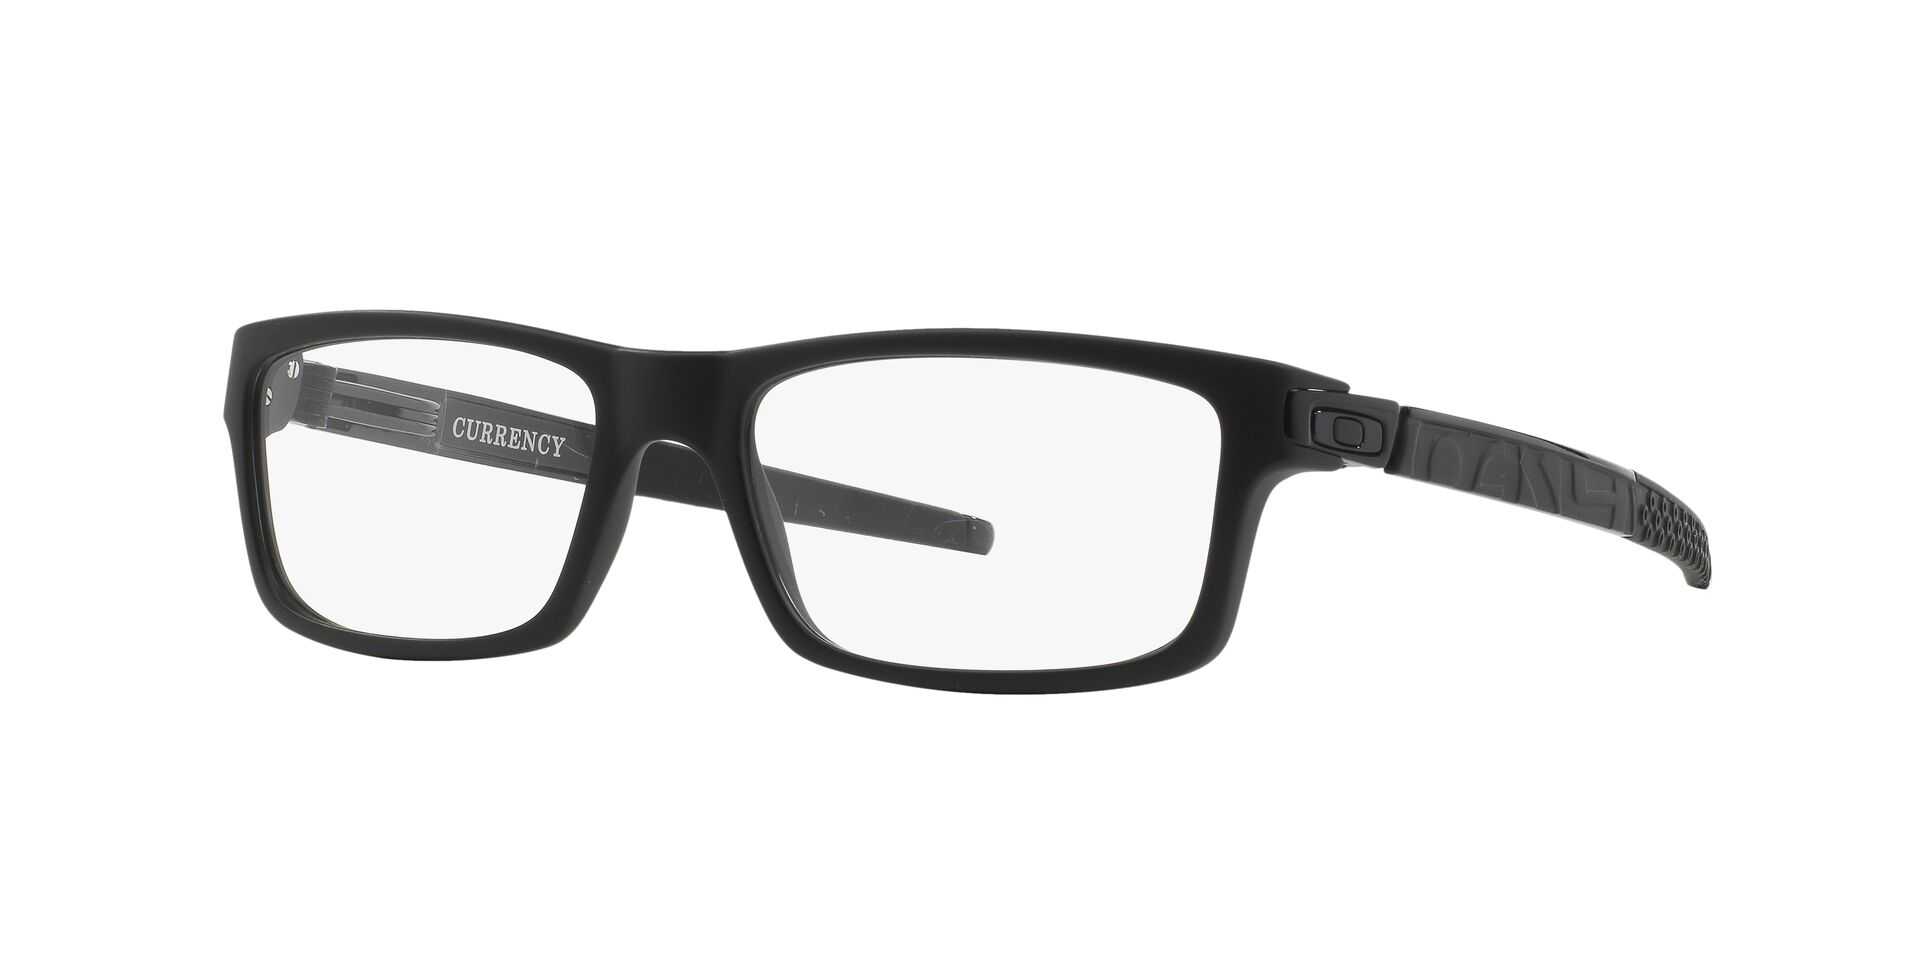 Eyeglasses OAKLEY OX 8026 802601 CURRENCY 54/17 Man Noir rectangle frames  Full Frame Glasses trendy 54mmx17mm 175$CA